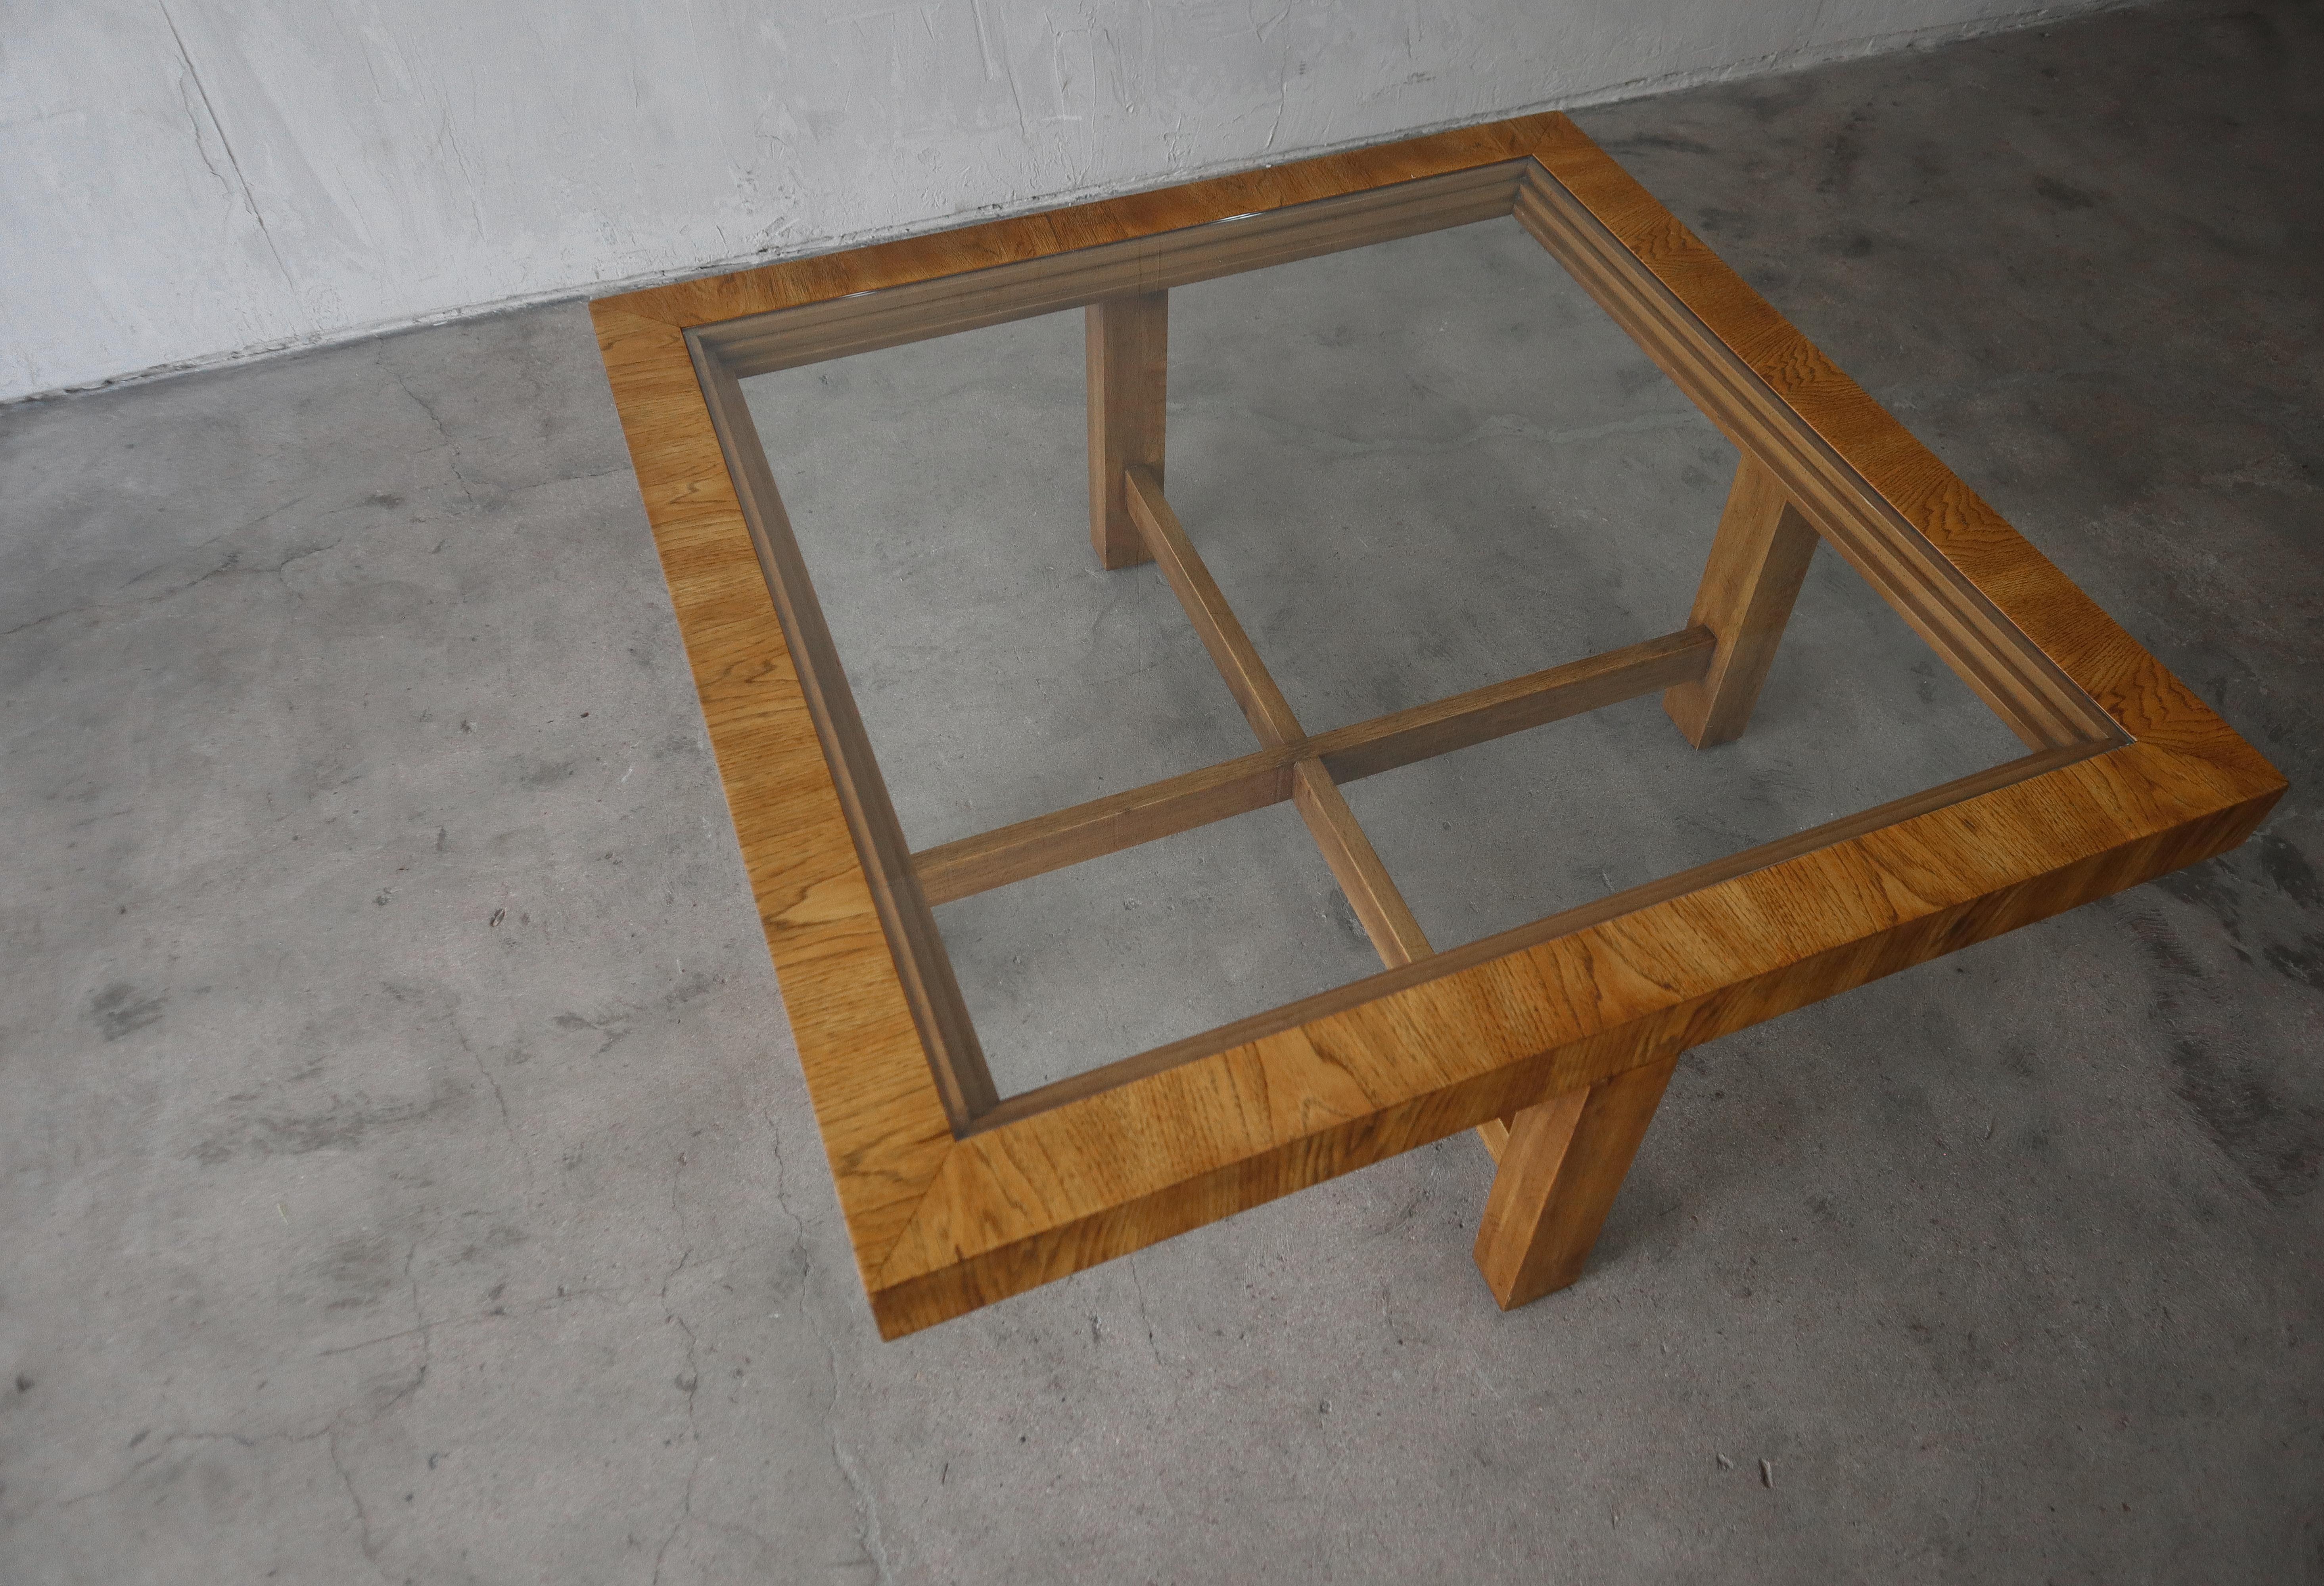 Table basse carrée en chêne et verre, simple et sophistiquée. Minimal mais beau. Le grain et les détails du bois sont magnifiques.

La table est en excellente condition vintage sans aucun dommage réel à noter. Le verre est neuf.

